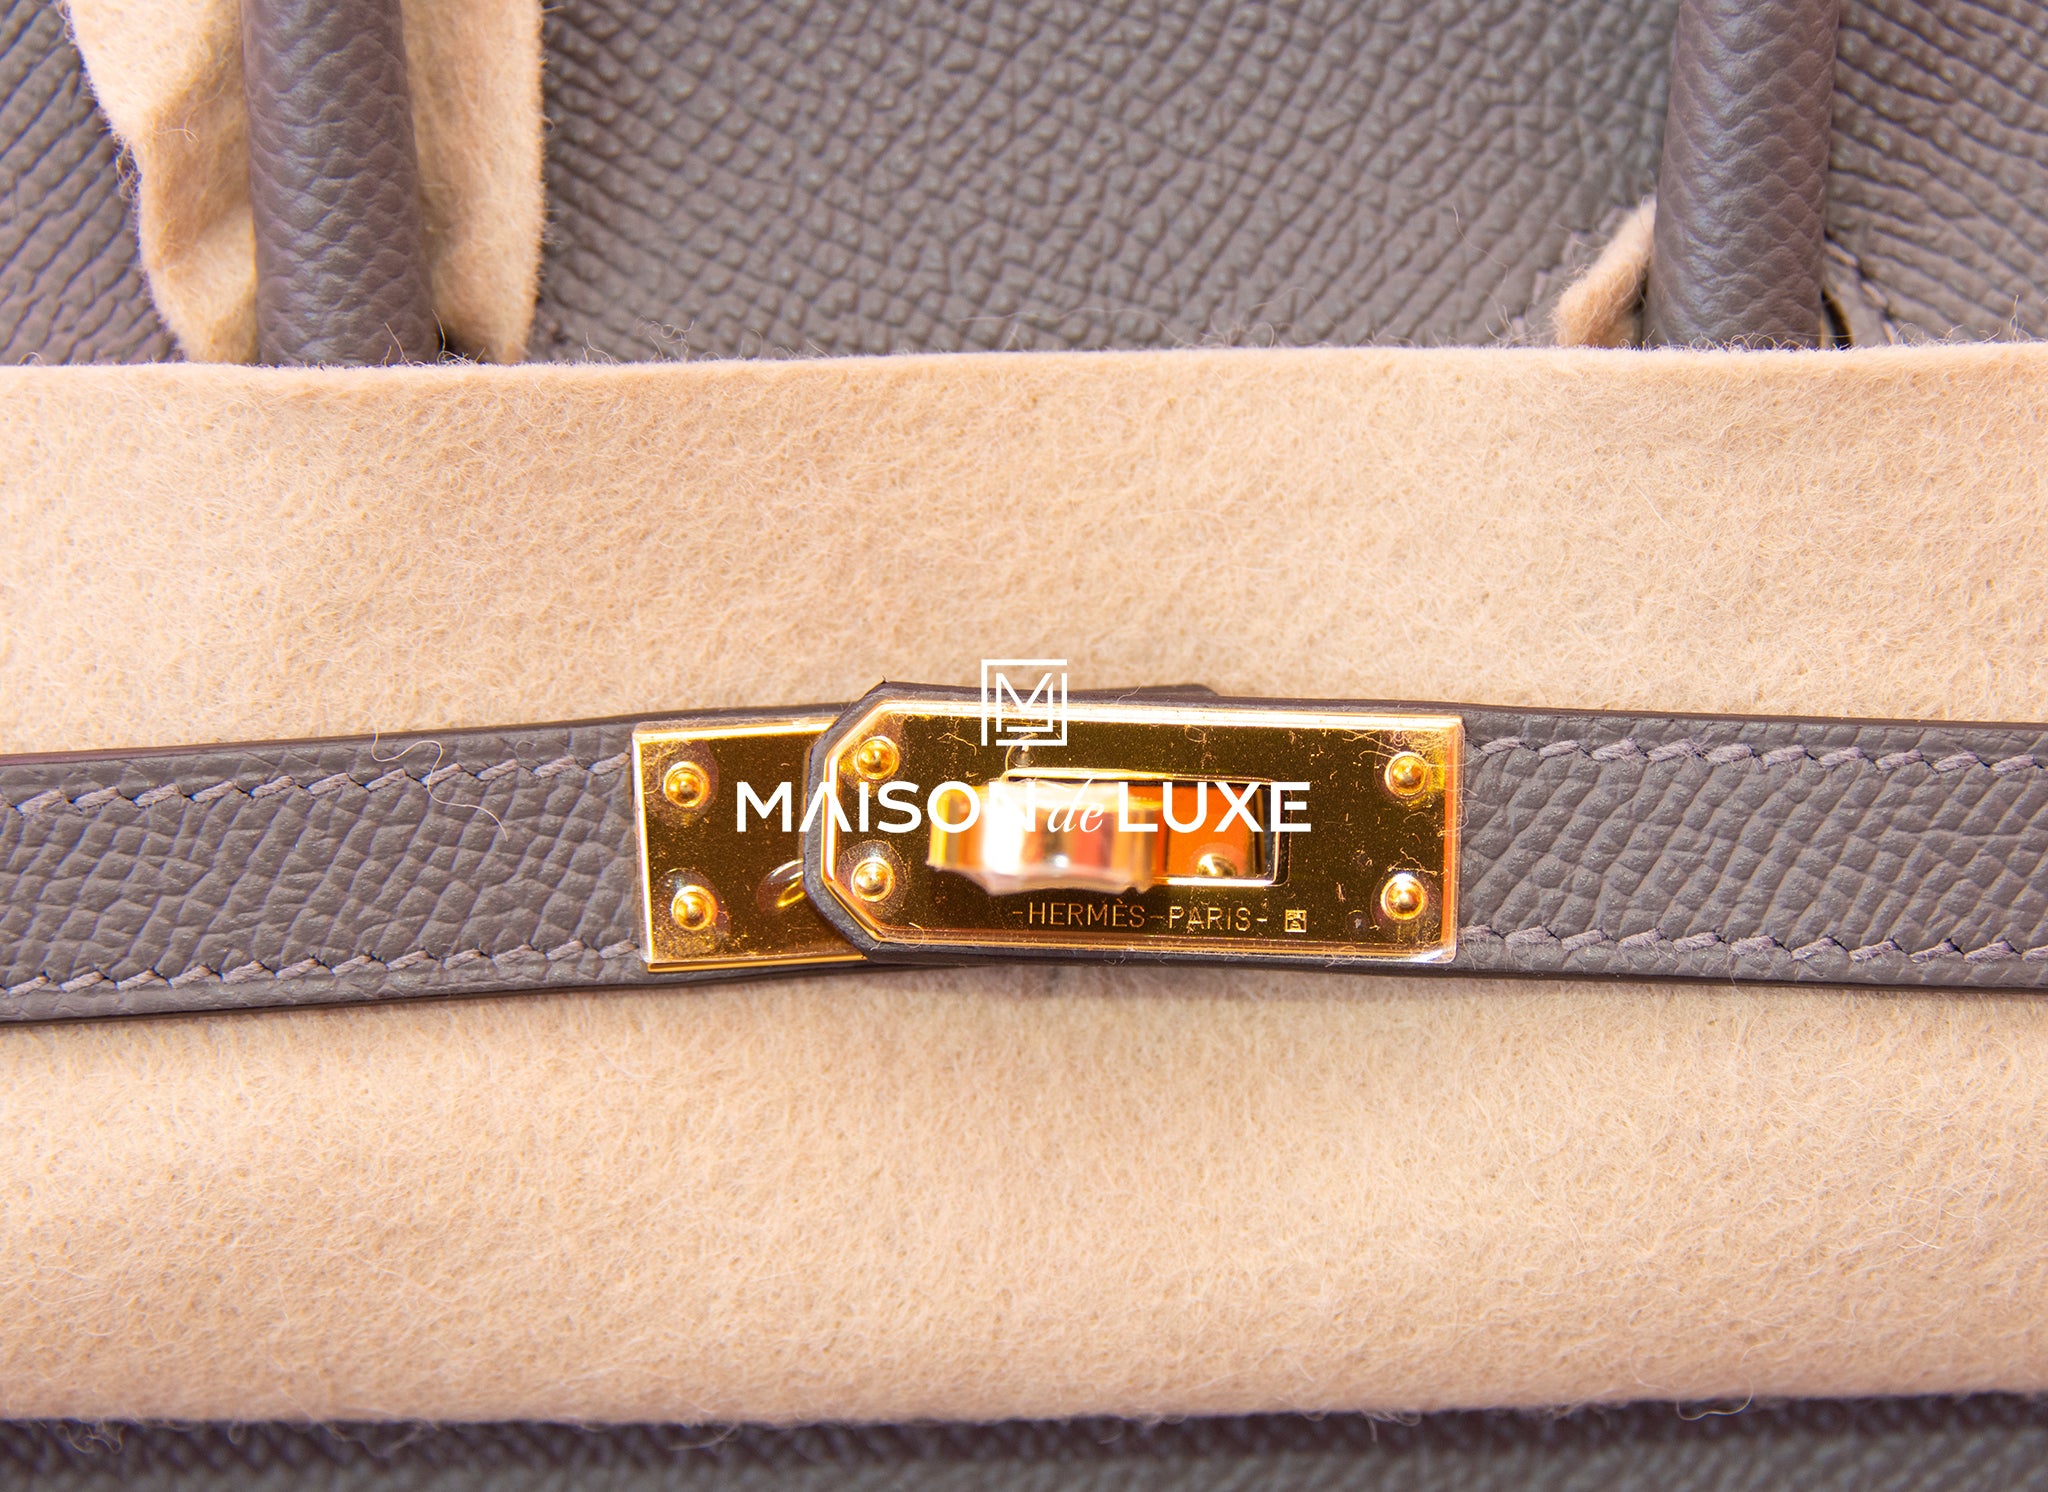 Hermes Gris Meyer Gray Epsom Gold Hardware Sellier Birkin 25 Handbag